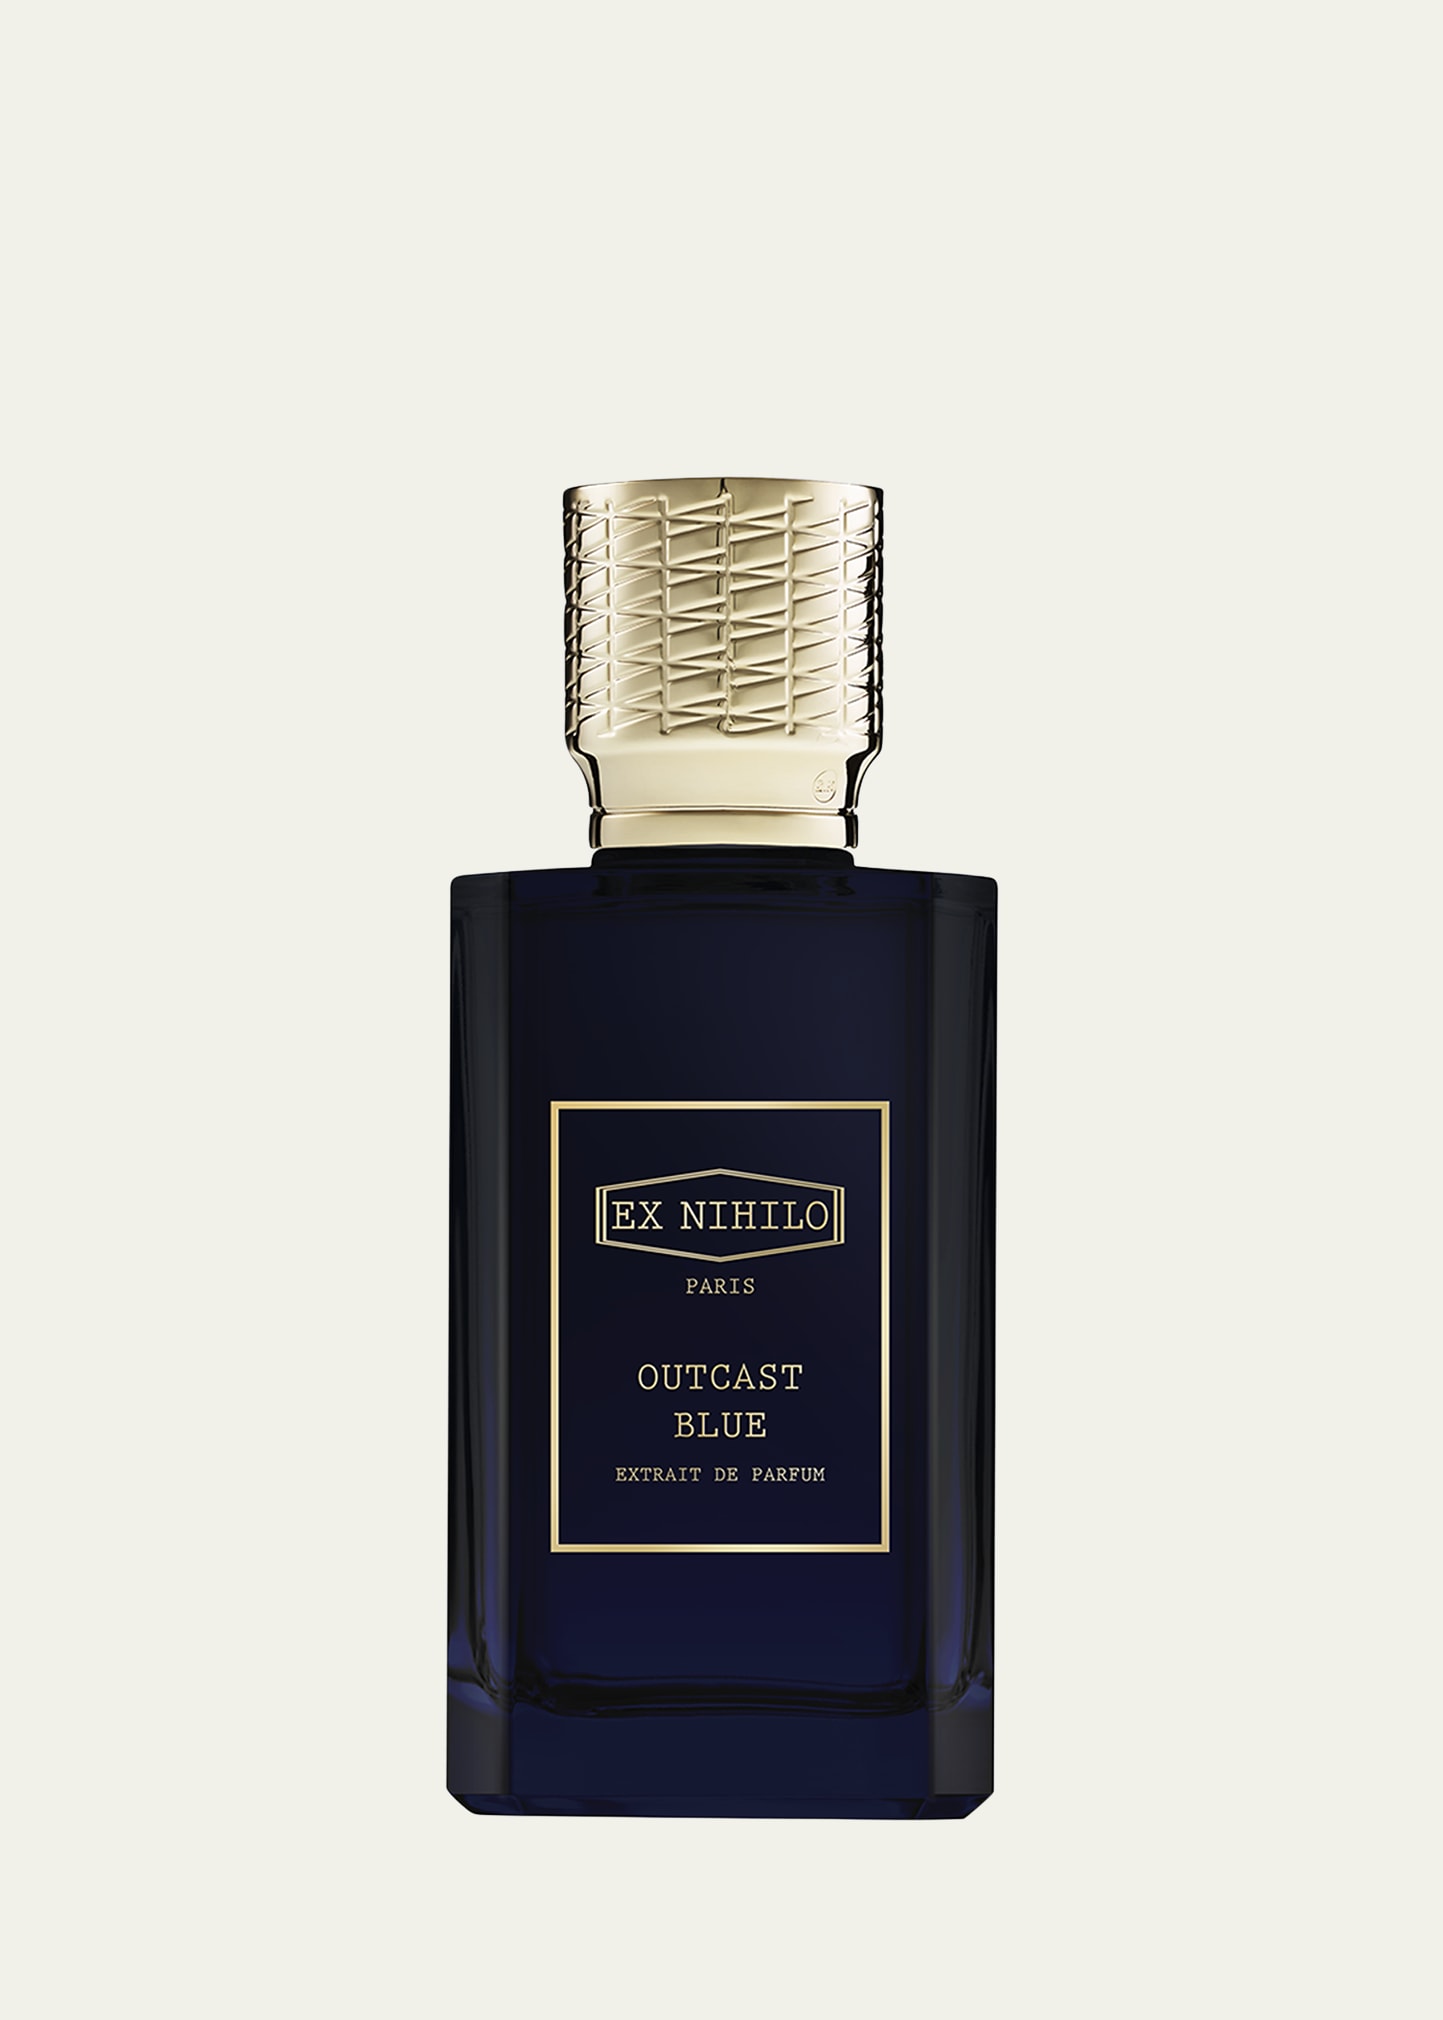 Outcast Blue Extrait de Parfum, 3.4 oz.